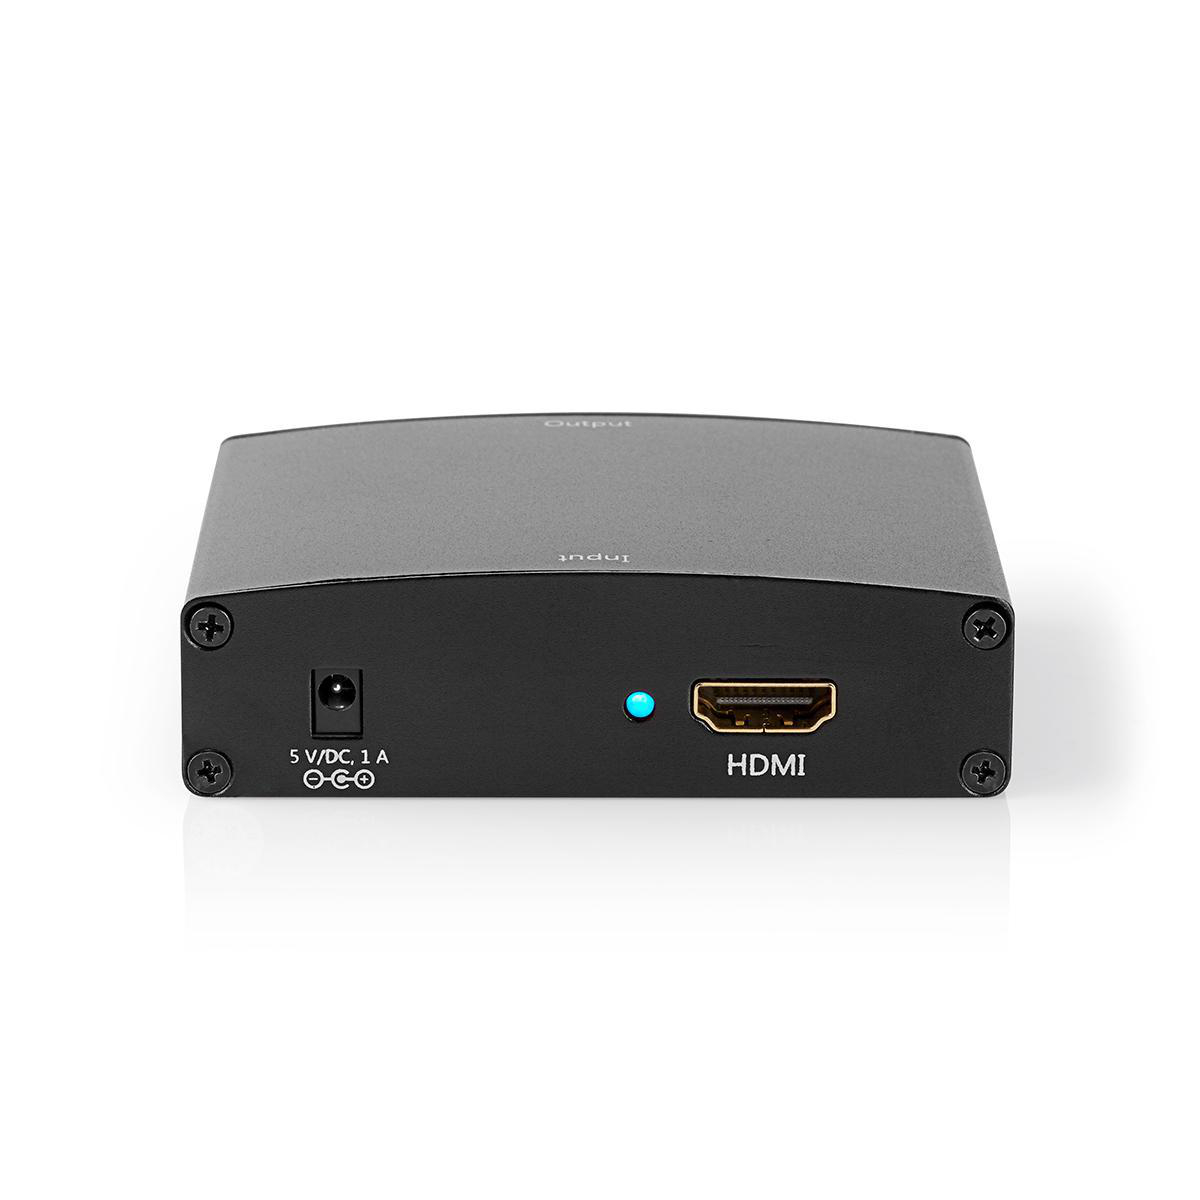 NEDIS VCON3450AT HDMI Converter